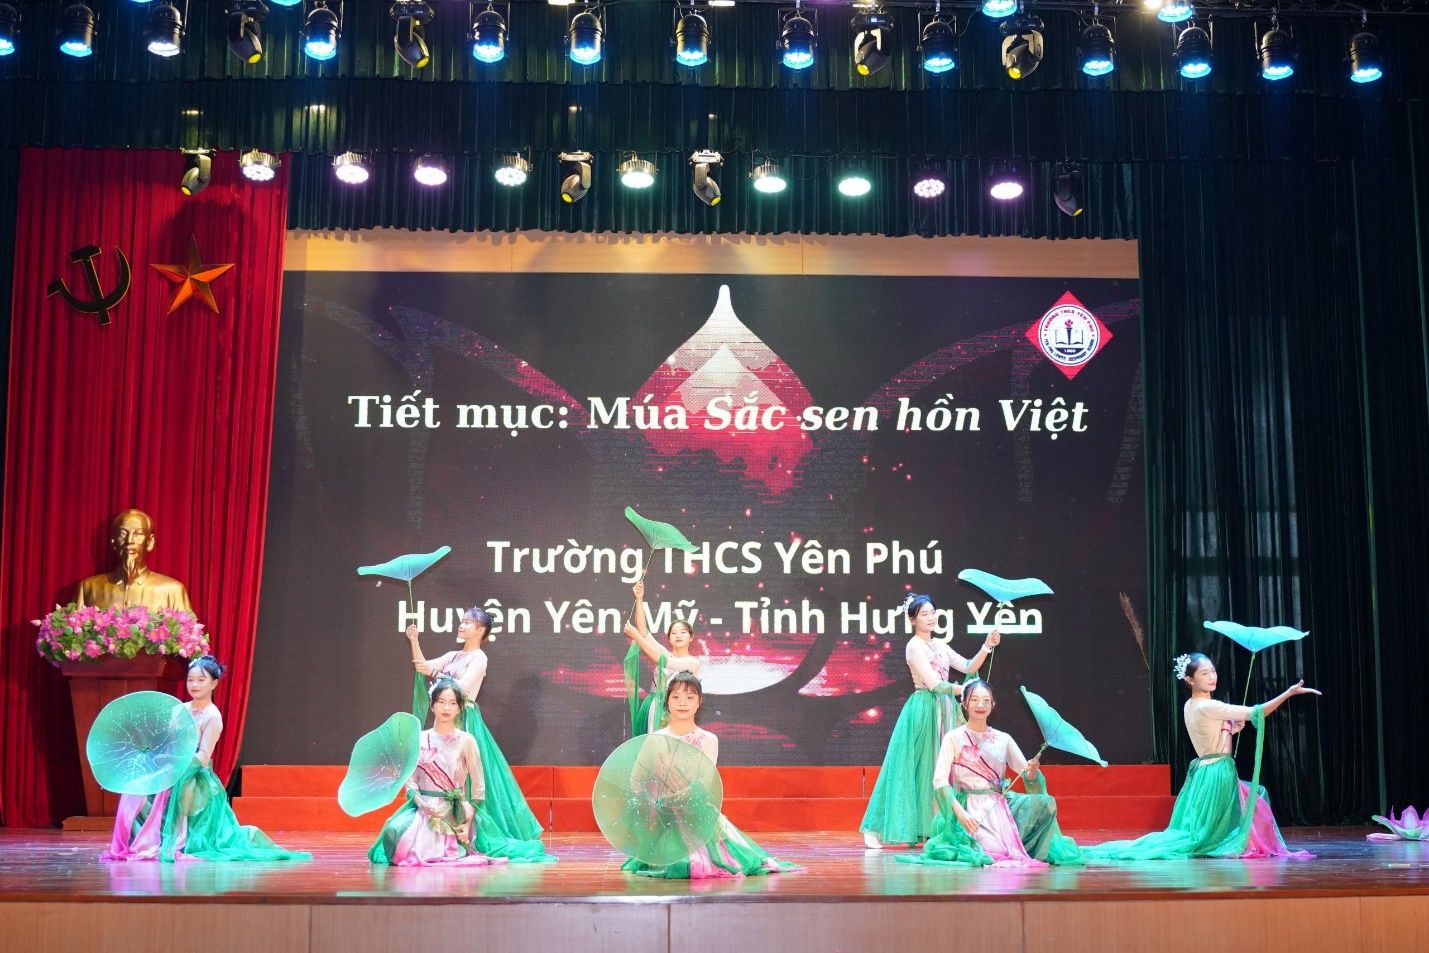 Học sinh Trường THCS Yên Phú xuất sắc tham dự Cuộc thi Chung kết Toàn quốc Trạng Nguyên Tuổi 13 và Thắp sáng những ngôi sao buổi sớm